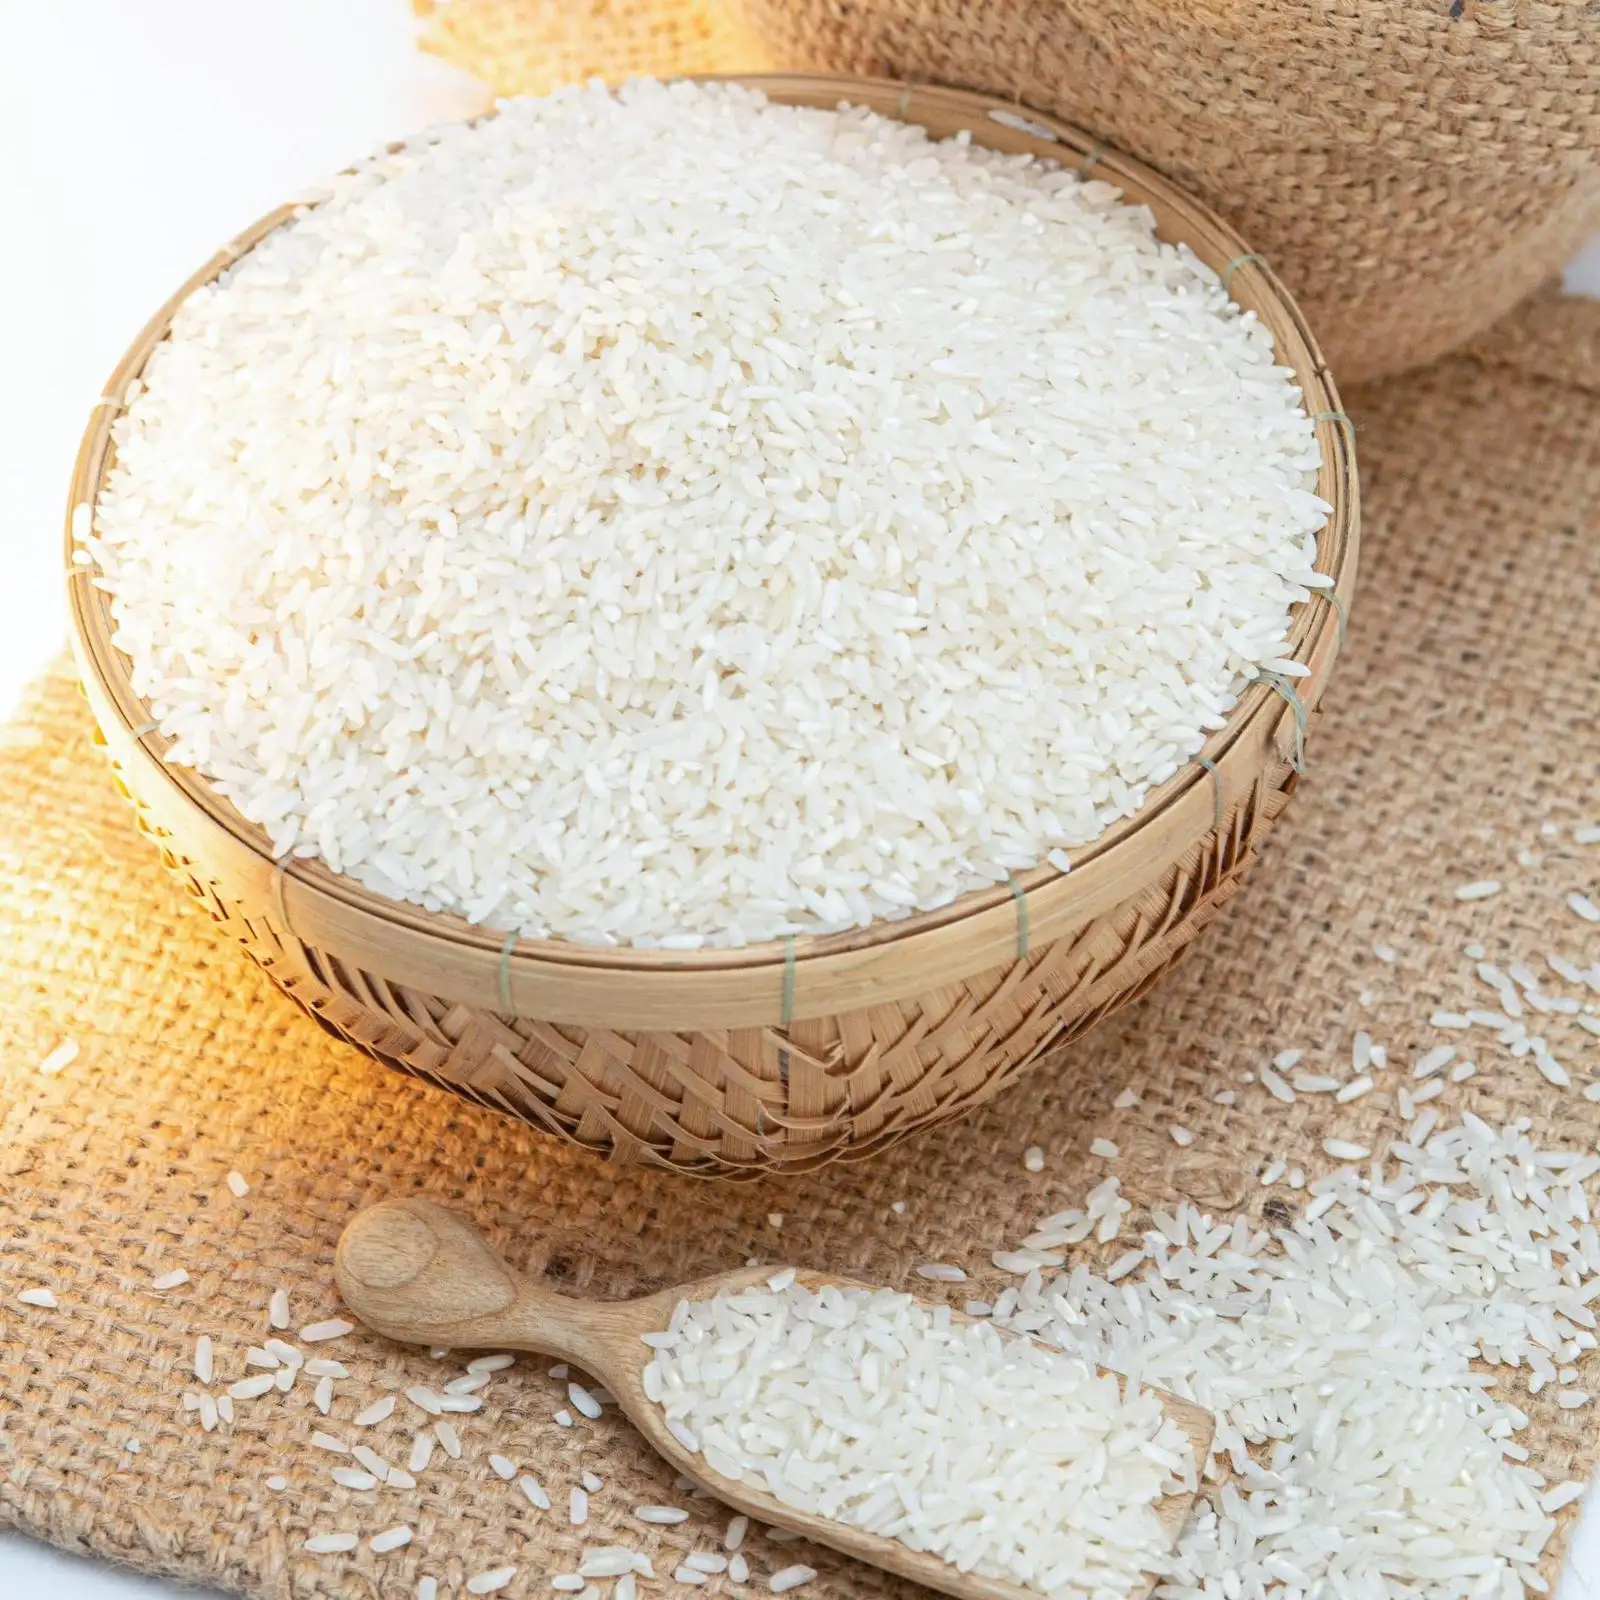 אורז יסמין אורז אורז אורז אורז 1 ק "ג 5 ק" ג 25 ק "ג גרגר לבן סיטוני